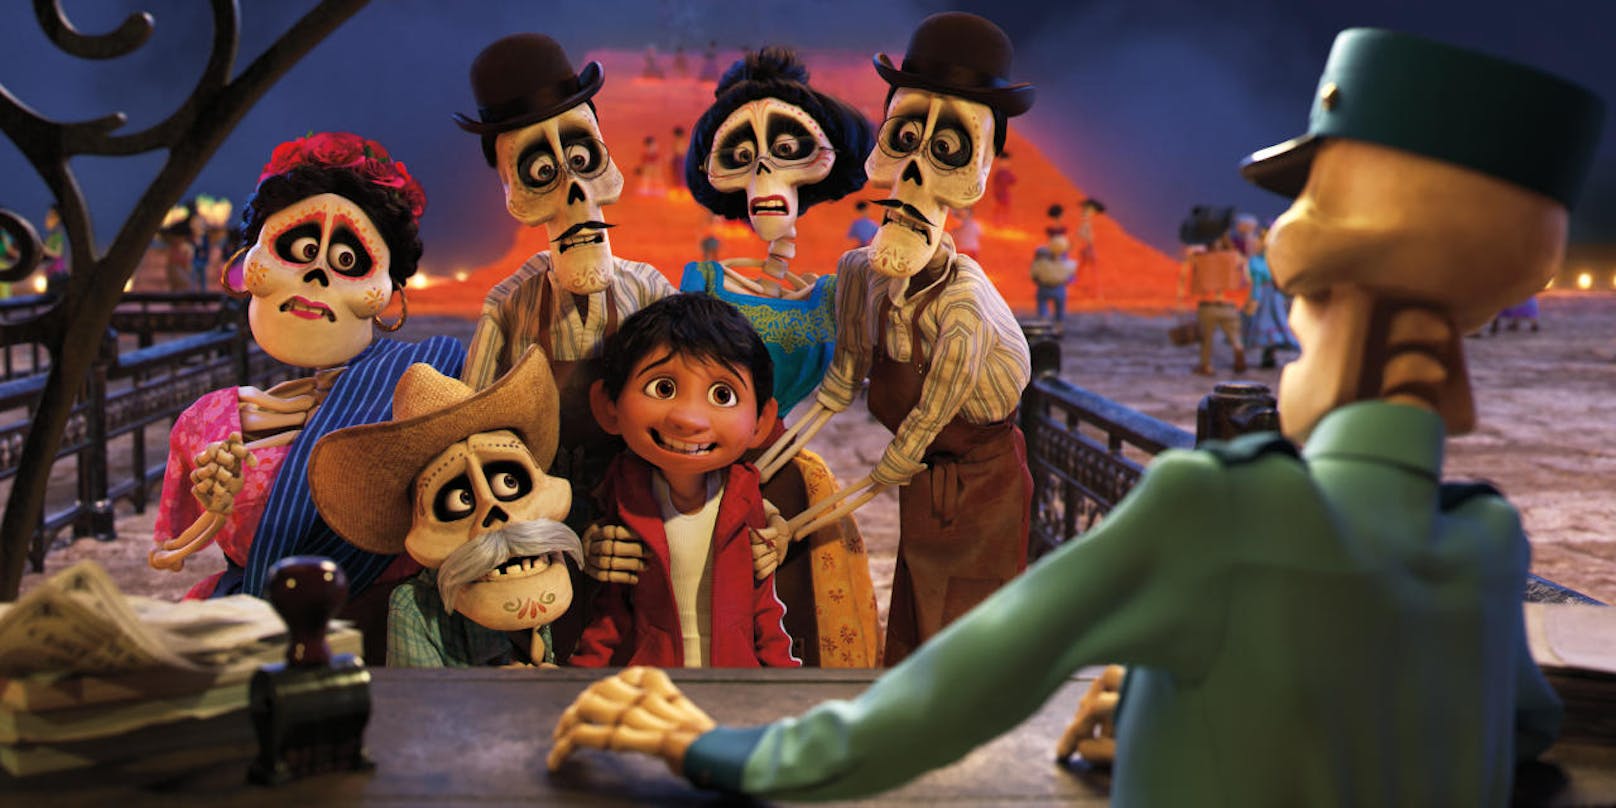 Den kleinen Miguel verschlägt es ins Reich der Toten. Im Kreis seiner (verstorbenen) Verwandten ist plötzlich er der Außenseiter, vor dem sich die Geister schrecken. Fotocredit: Disney-Pixar 2017